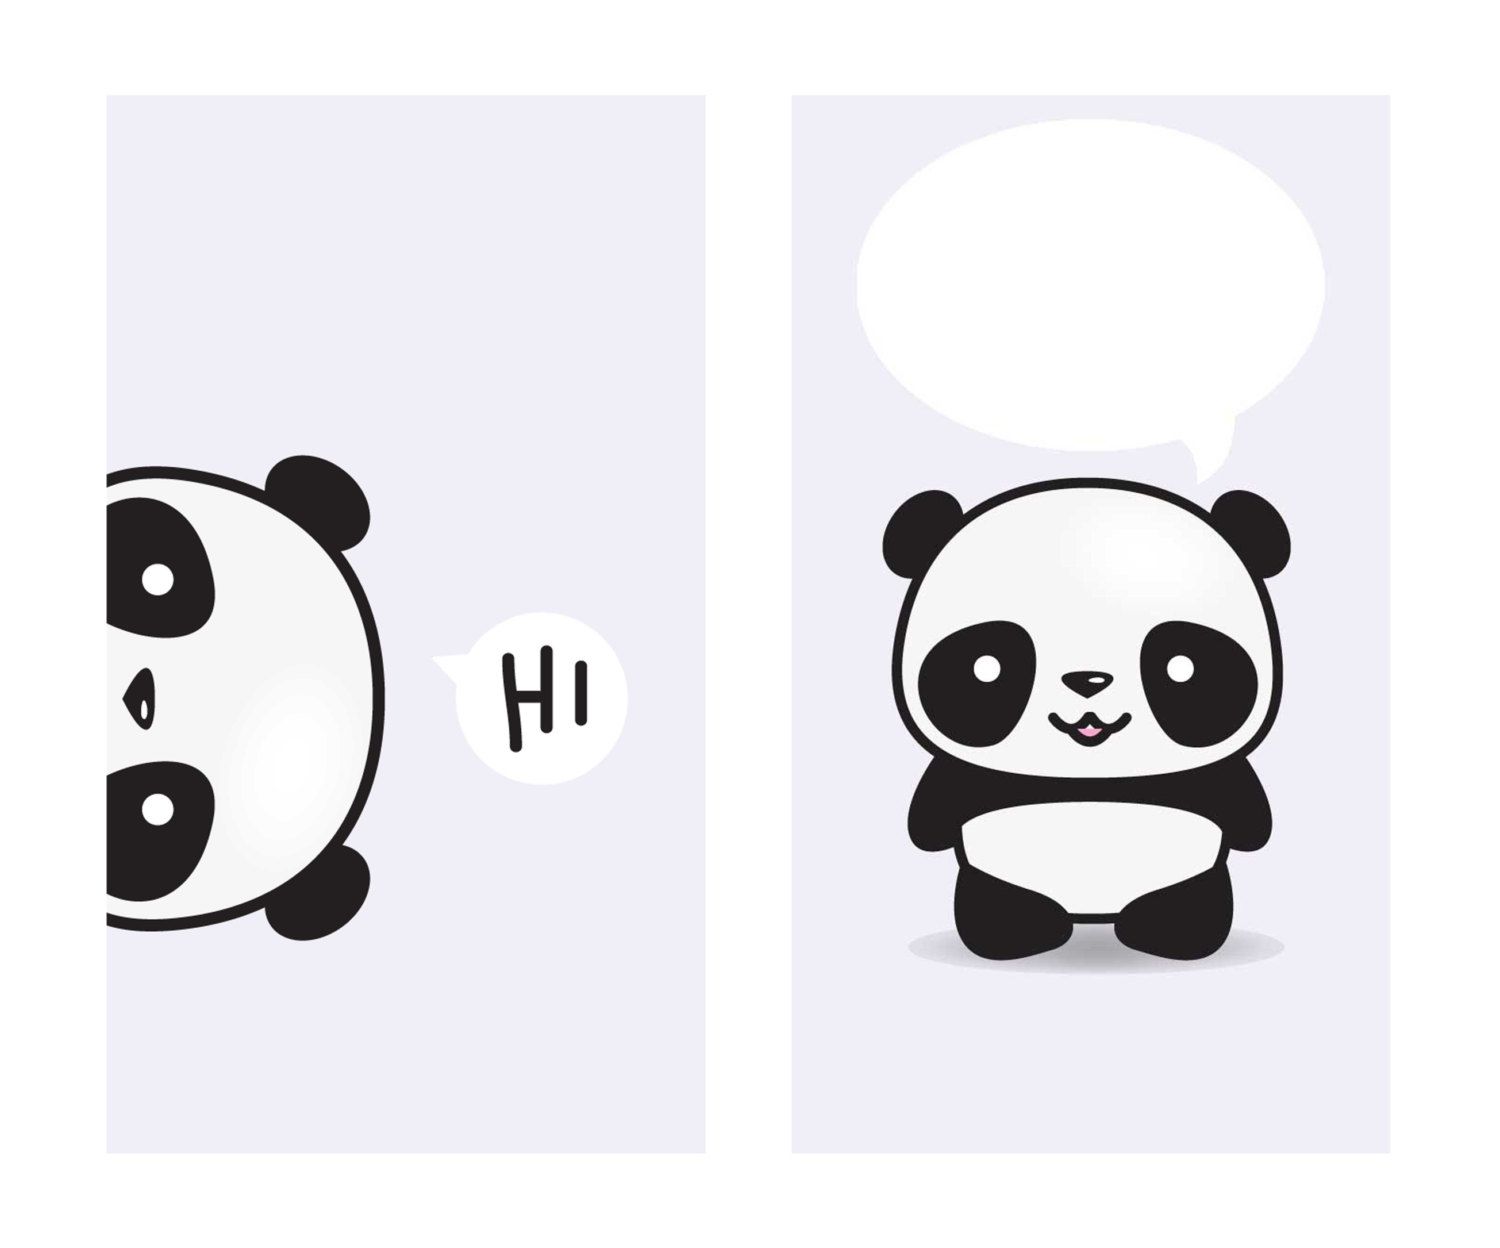 Cute Kawaii Panda Wallpapers